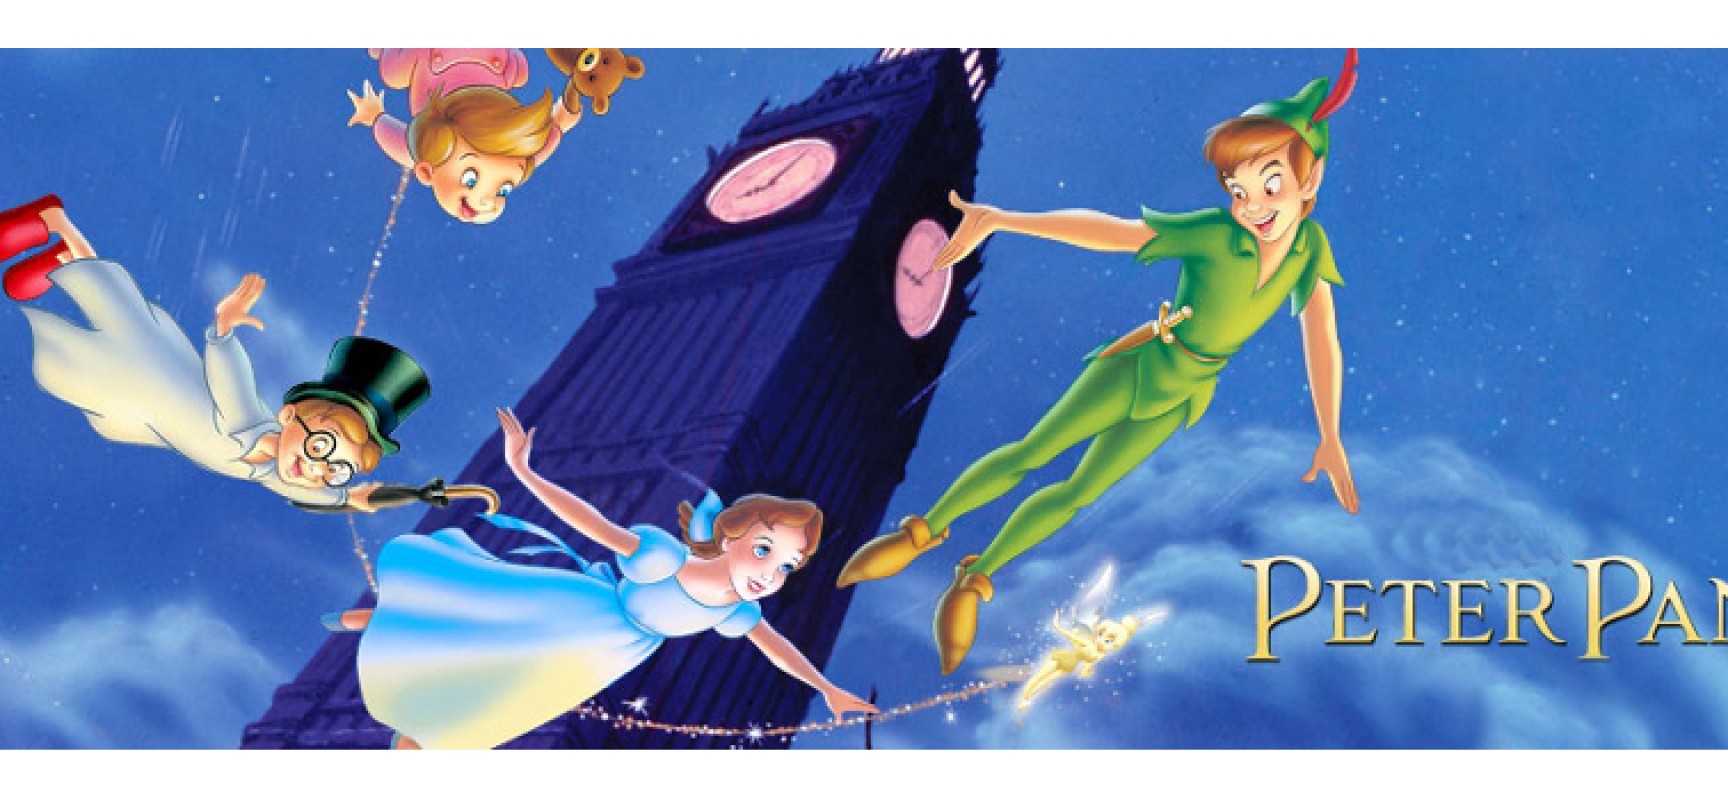 Il teatro dei burattini domani a Bisceglie con lo spettacolo di “Peter Pan”